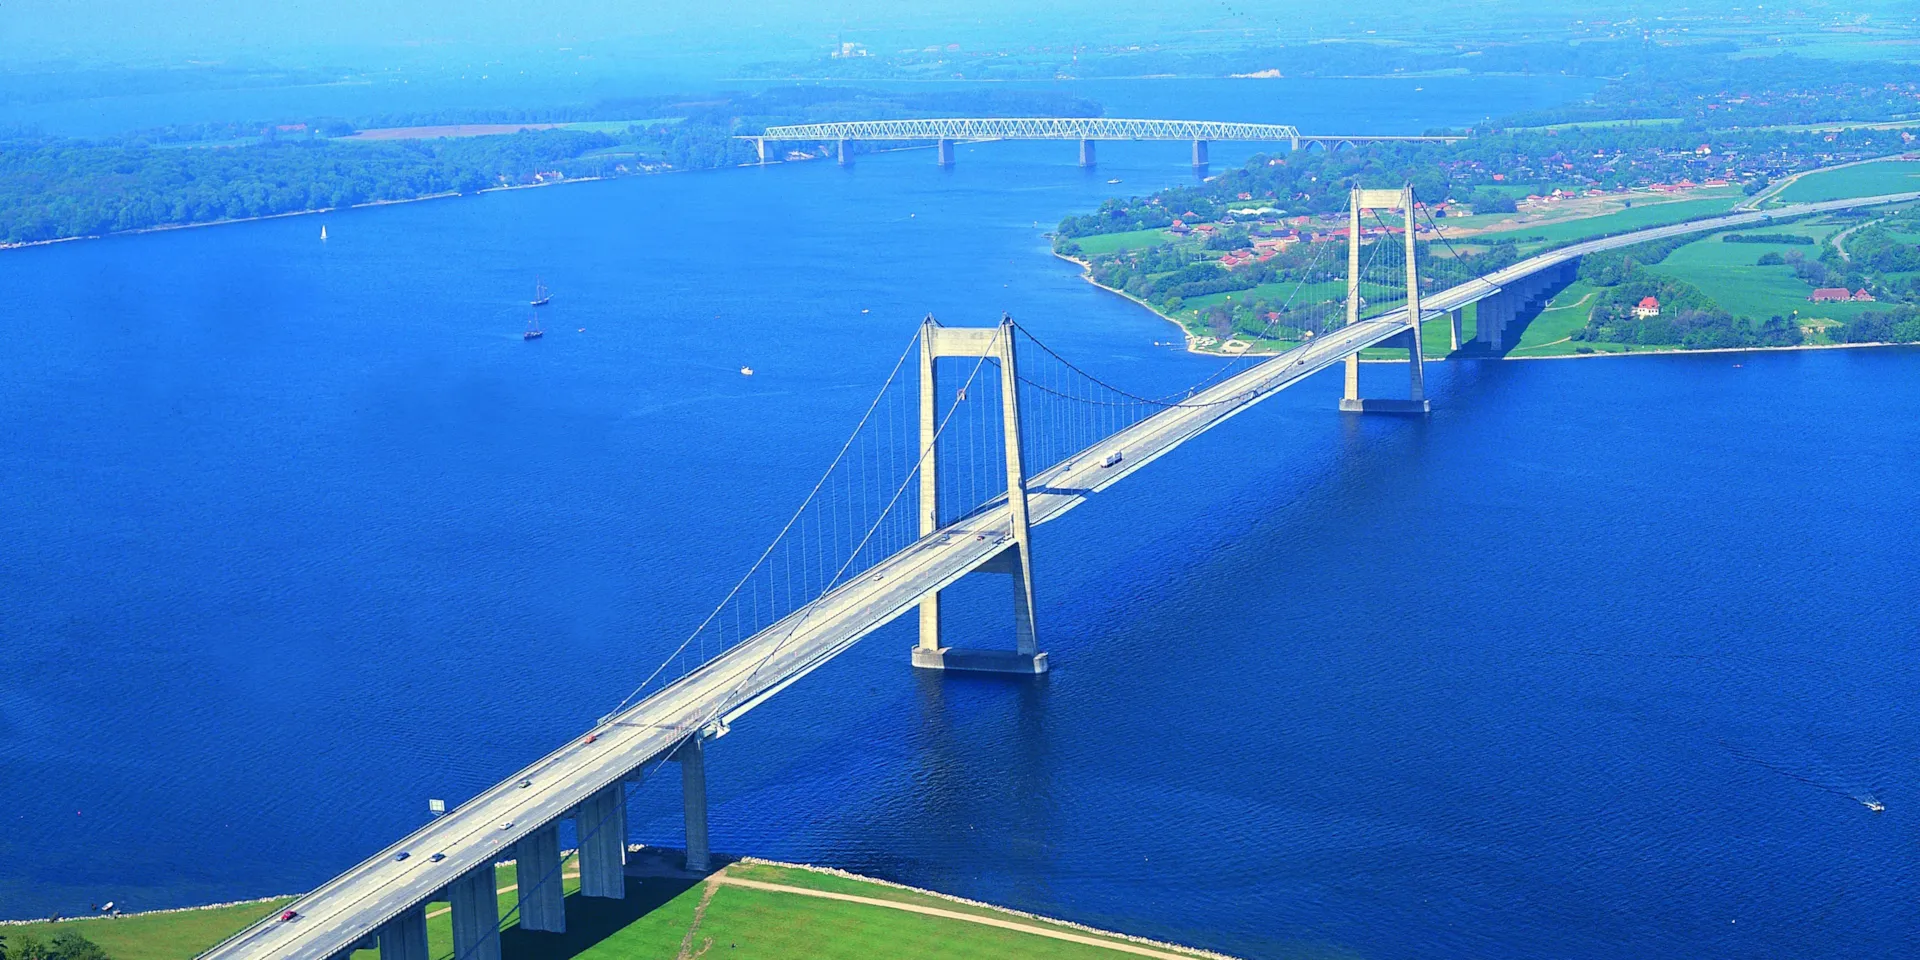 Nye Lillebælts bro
Middelfart
Arkitektur
Bro
Indviede af Kong Frederik IX
Danmarks første hængebro. 
To brotårne
Forbinder Fyn med Jylland.